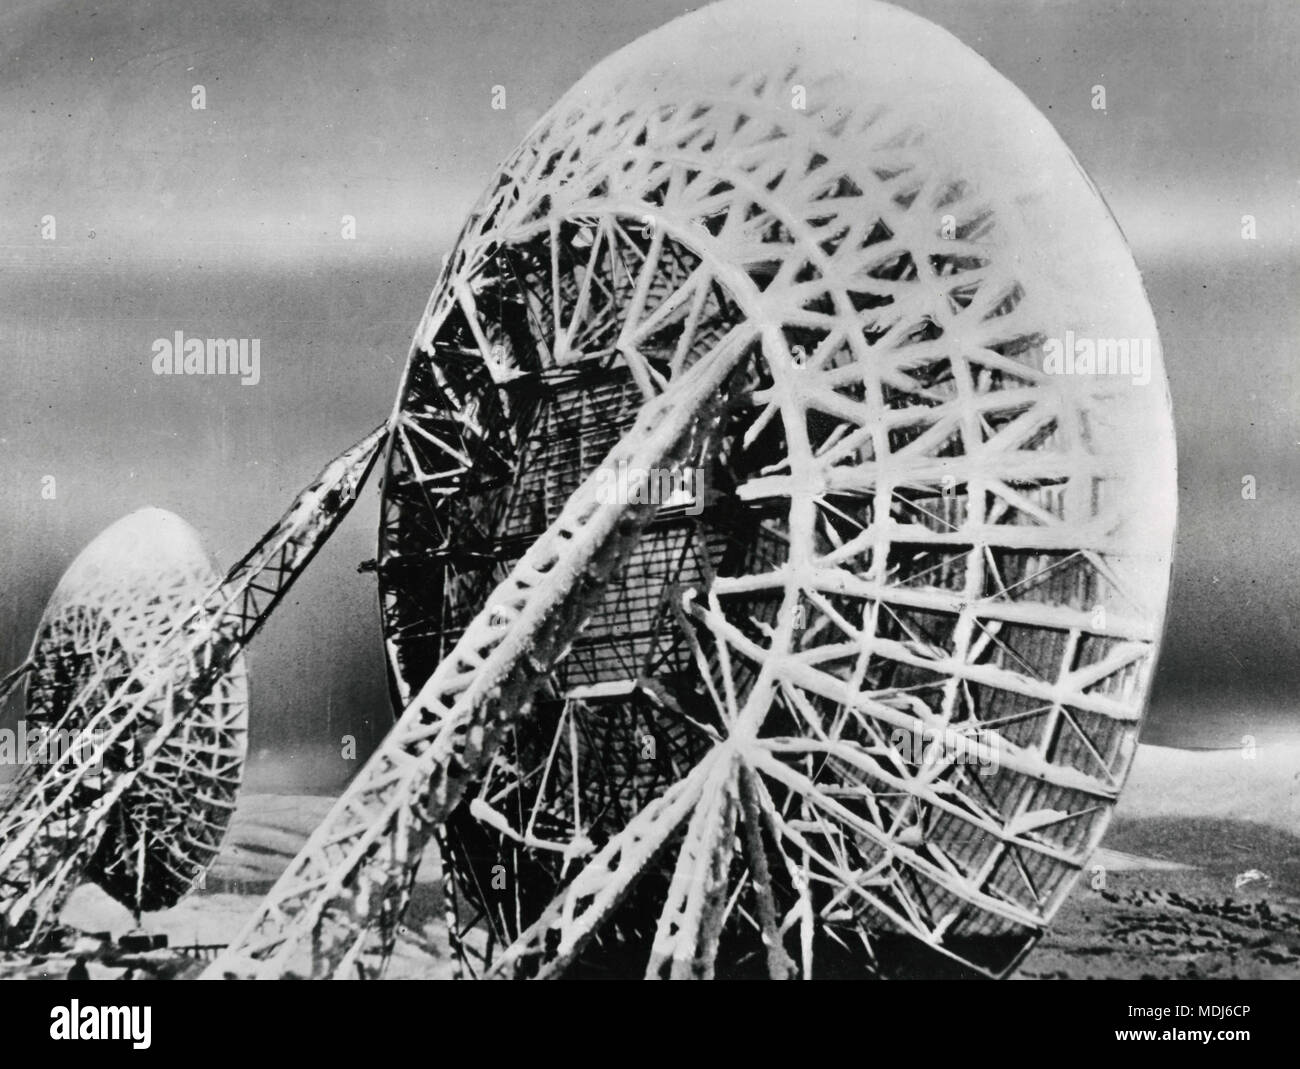 Antenna in alluminio del radar impianto difensivo, Alaska, Stati Uniti d'America degli anni cinquanta Foto Stock